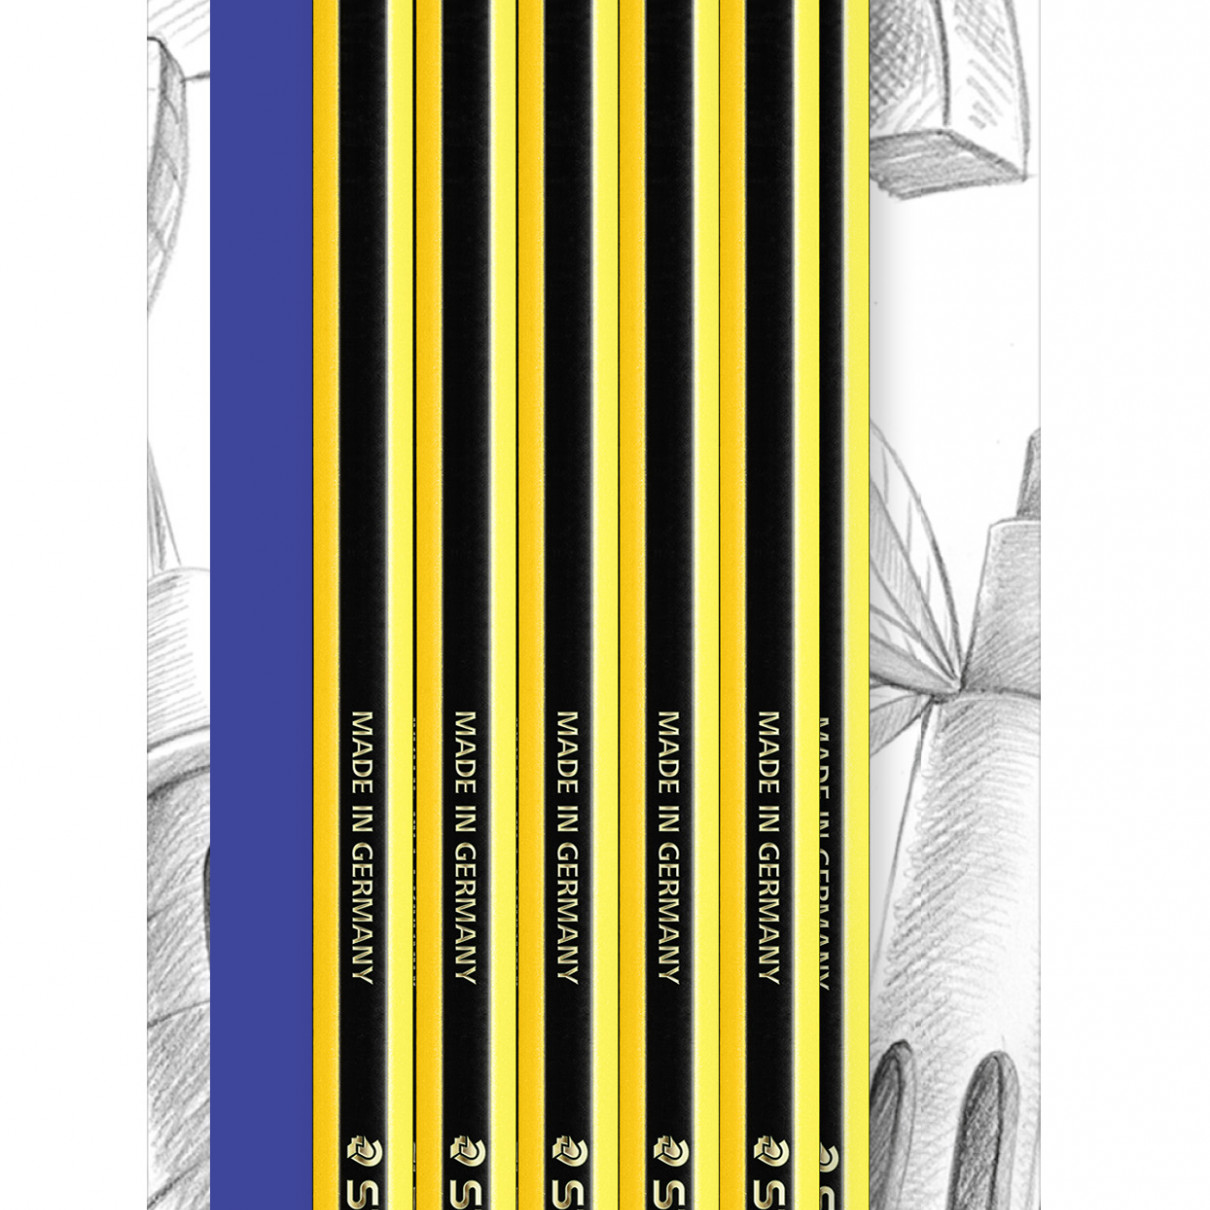 Staedtler Noris Pencils - HB (Pack of 10)